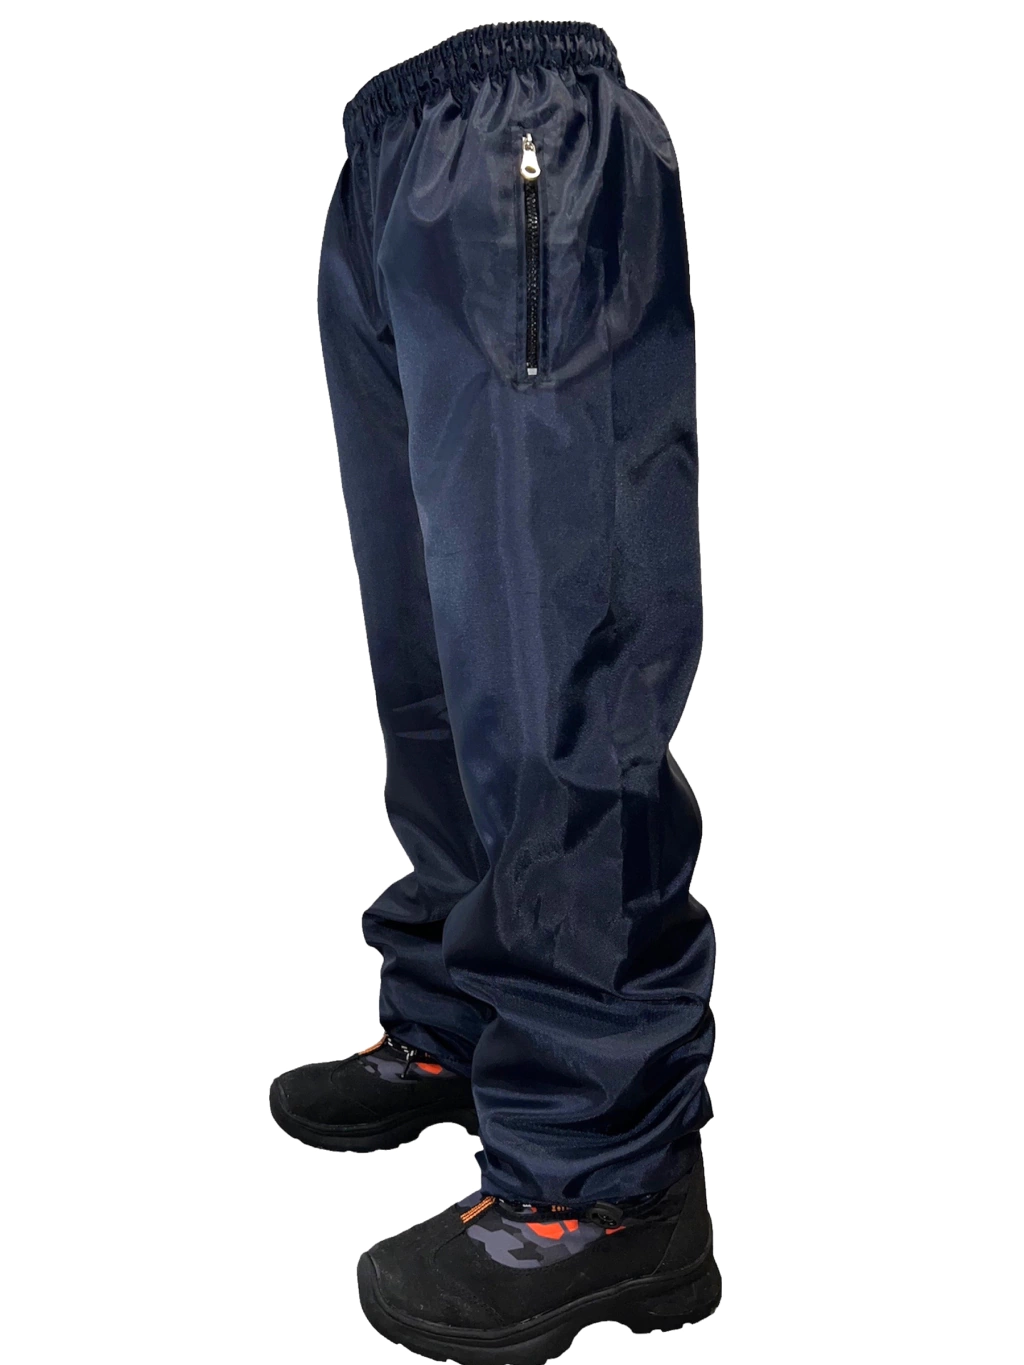 Pantalon Impermeable Niños/as Nieve Jeans710